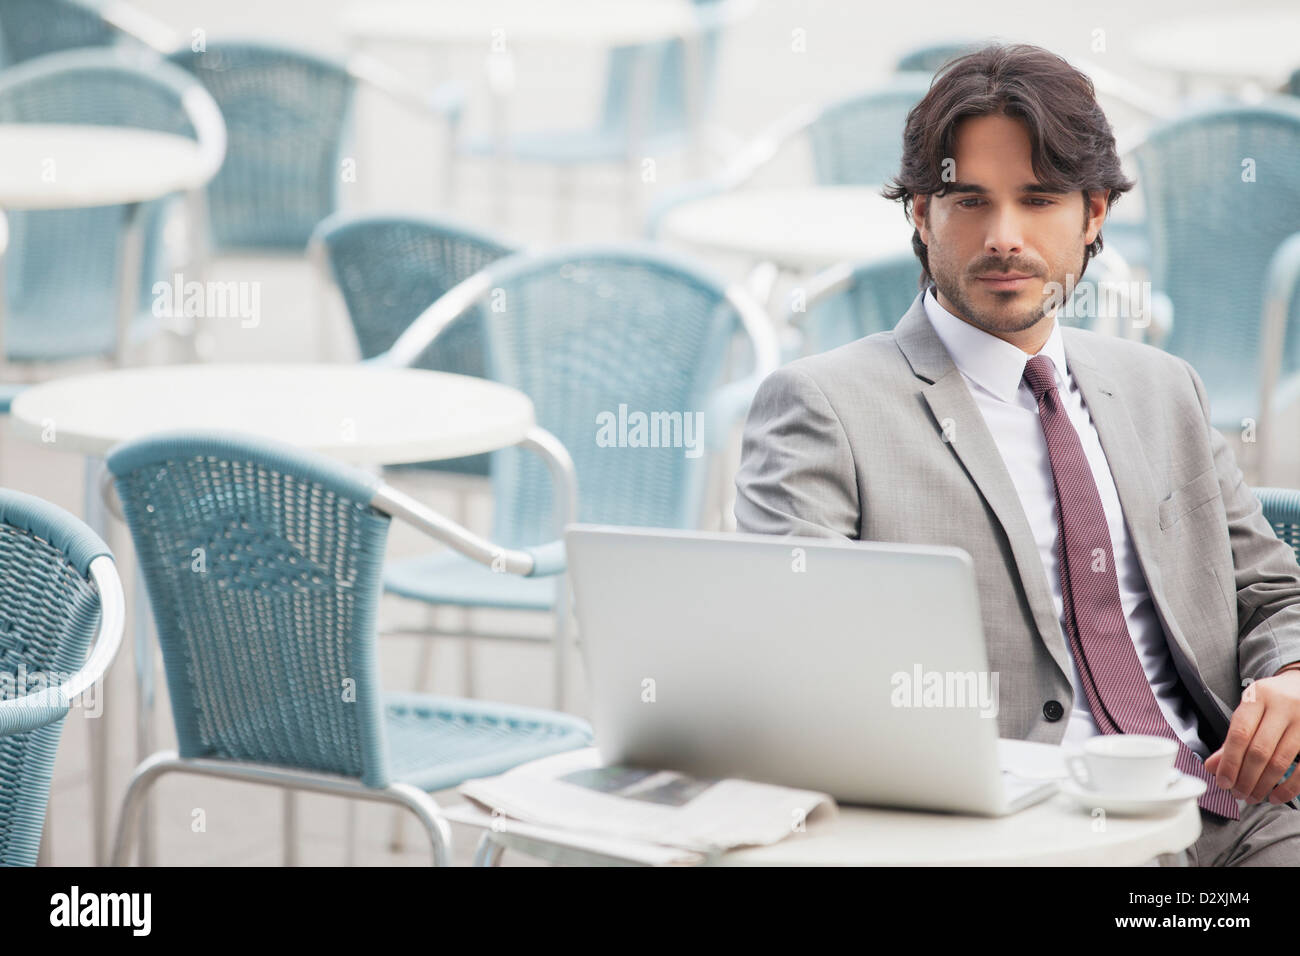 Businessman using laptop at sidewalk cafe Banque D'Images